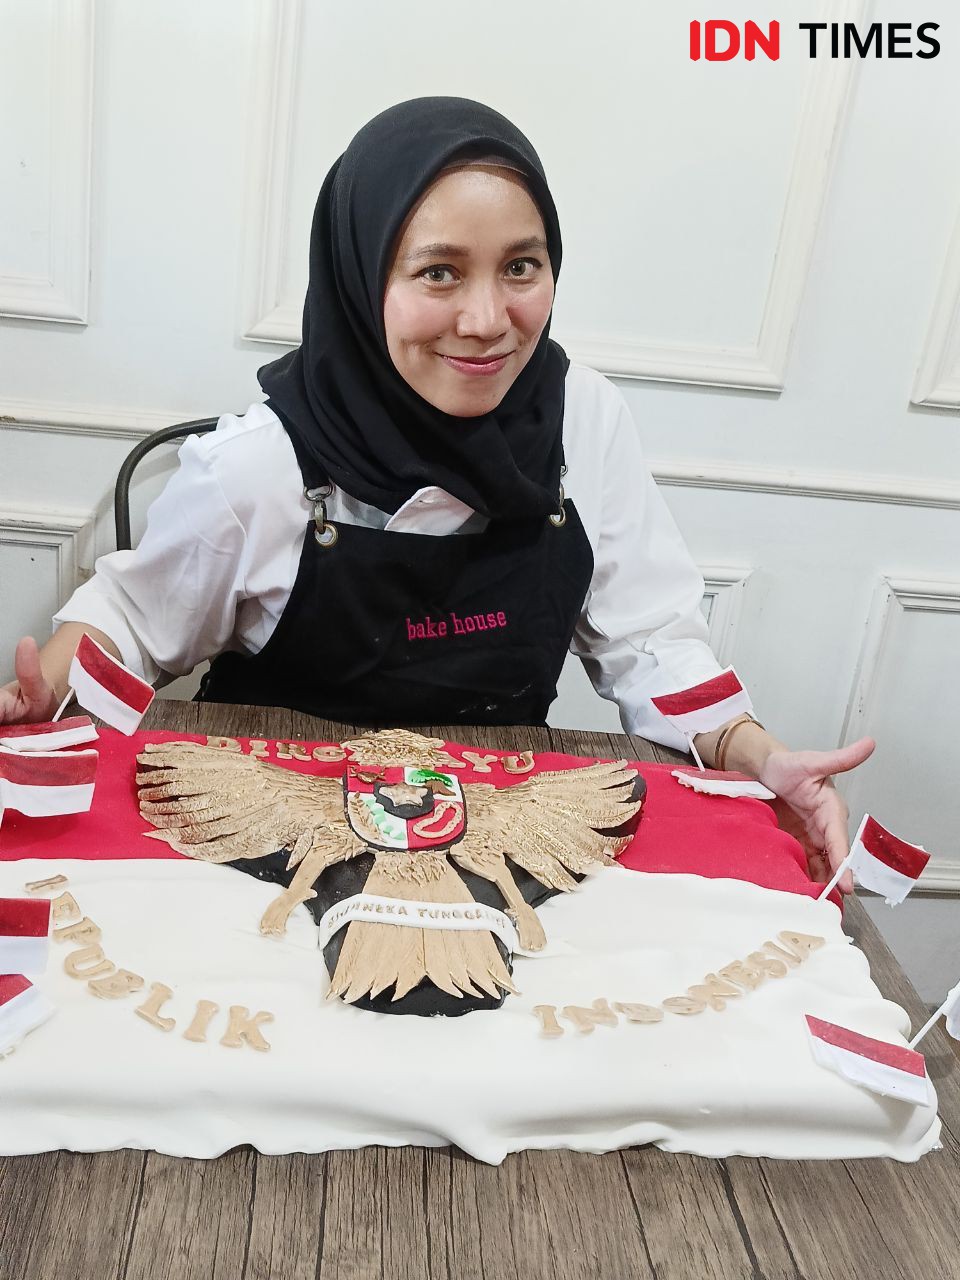 Mengintip Kue Kostum Kemerdekaan di Bake House Palembang